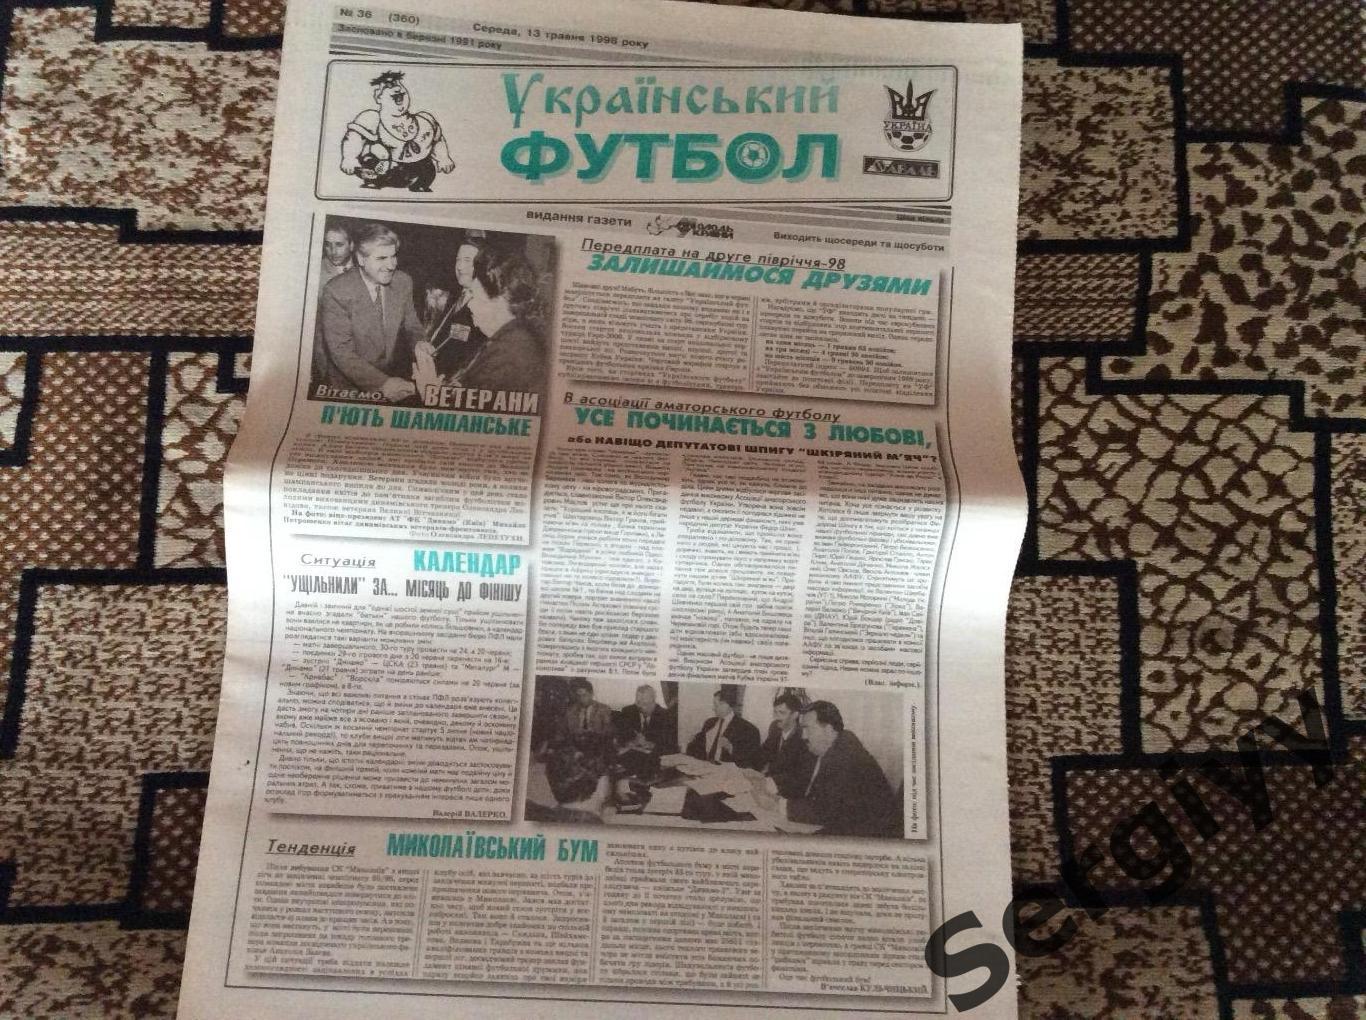 Український футбол номер 36 від 13.05.1998р